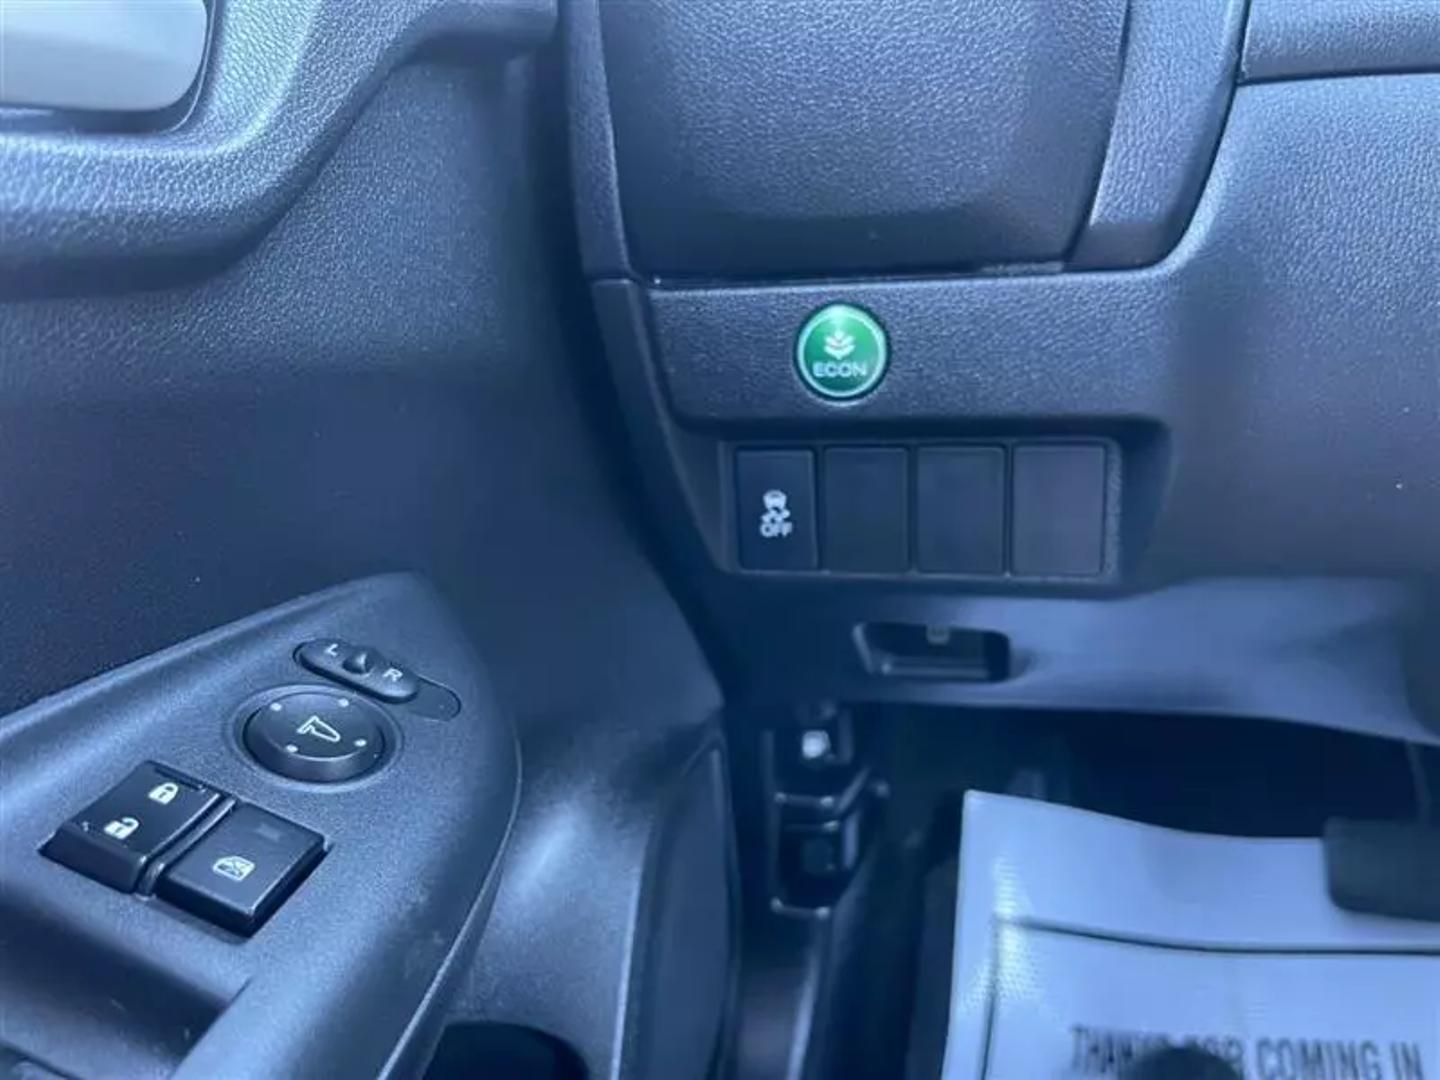 2017 Honda Fit Lx Hatchback 4d - Image 16